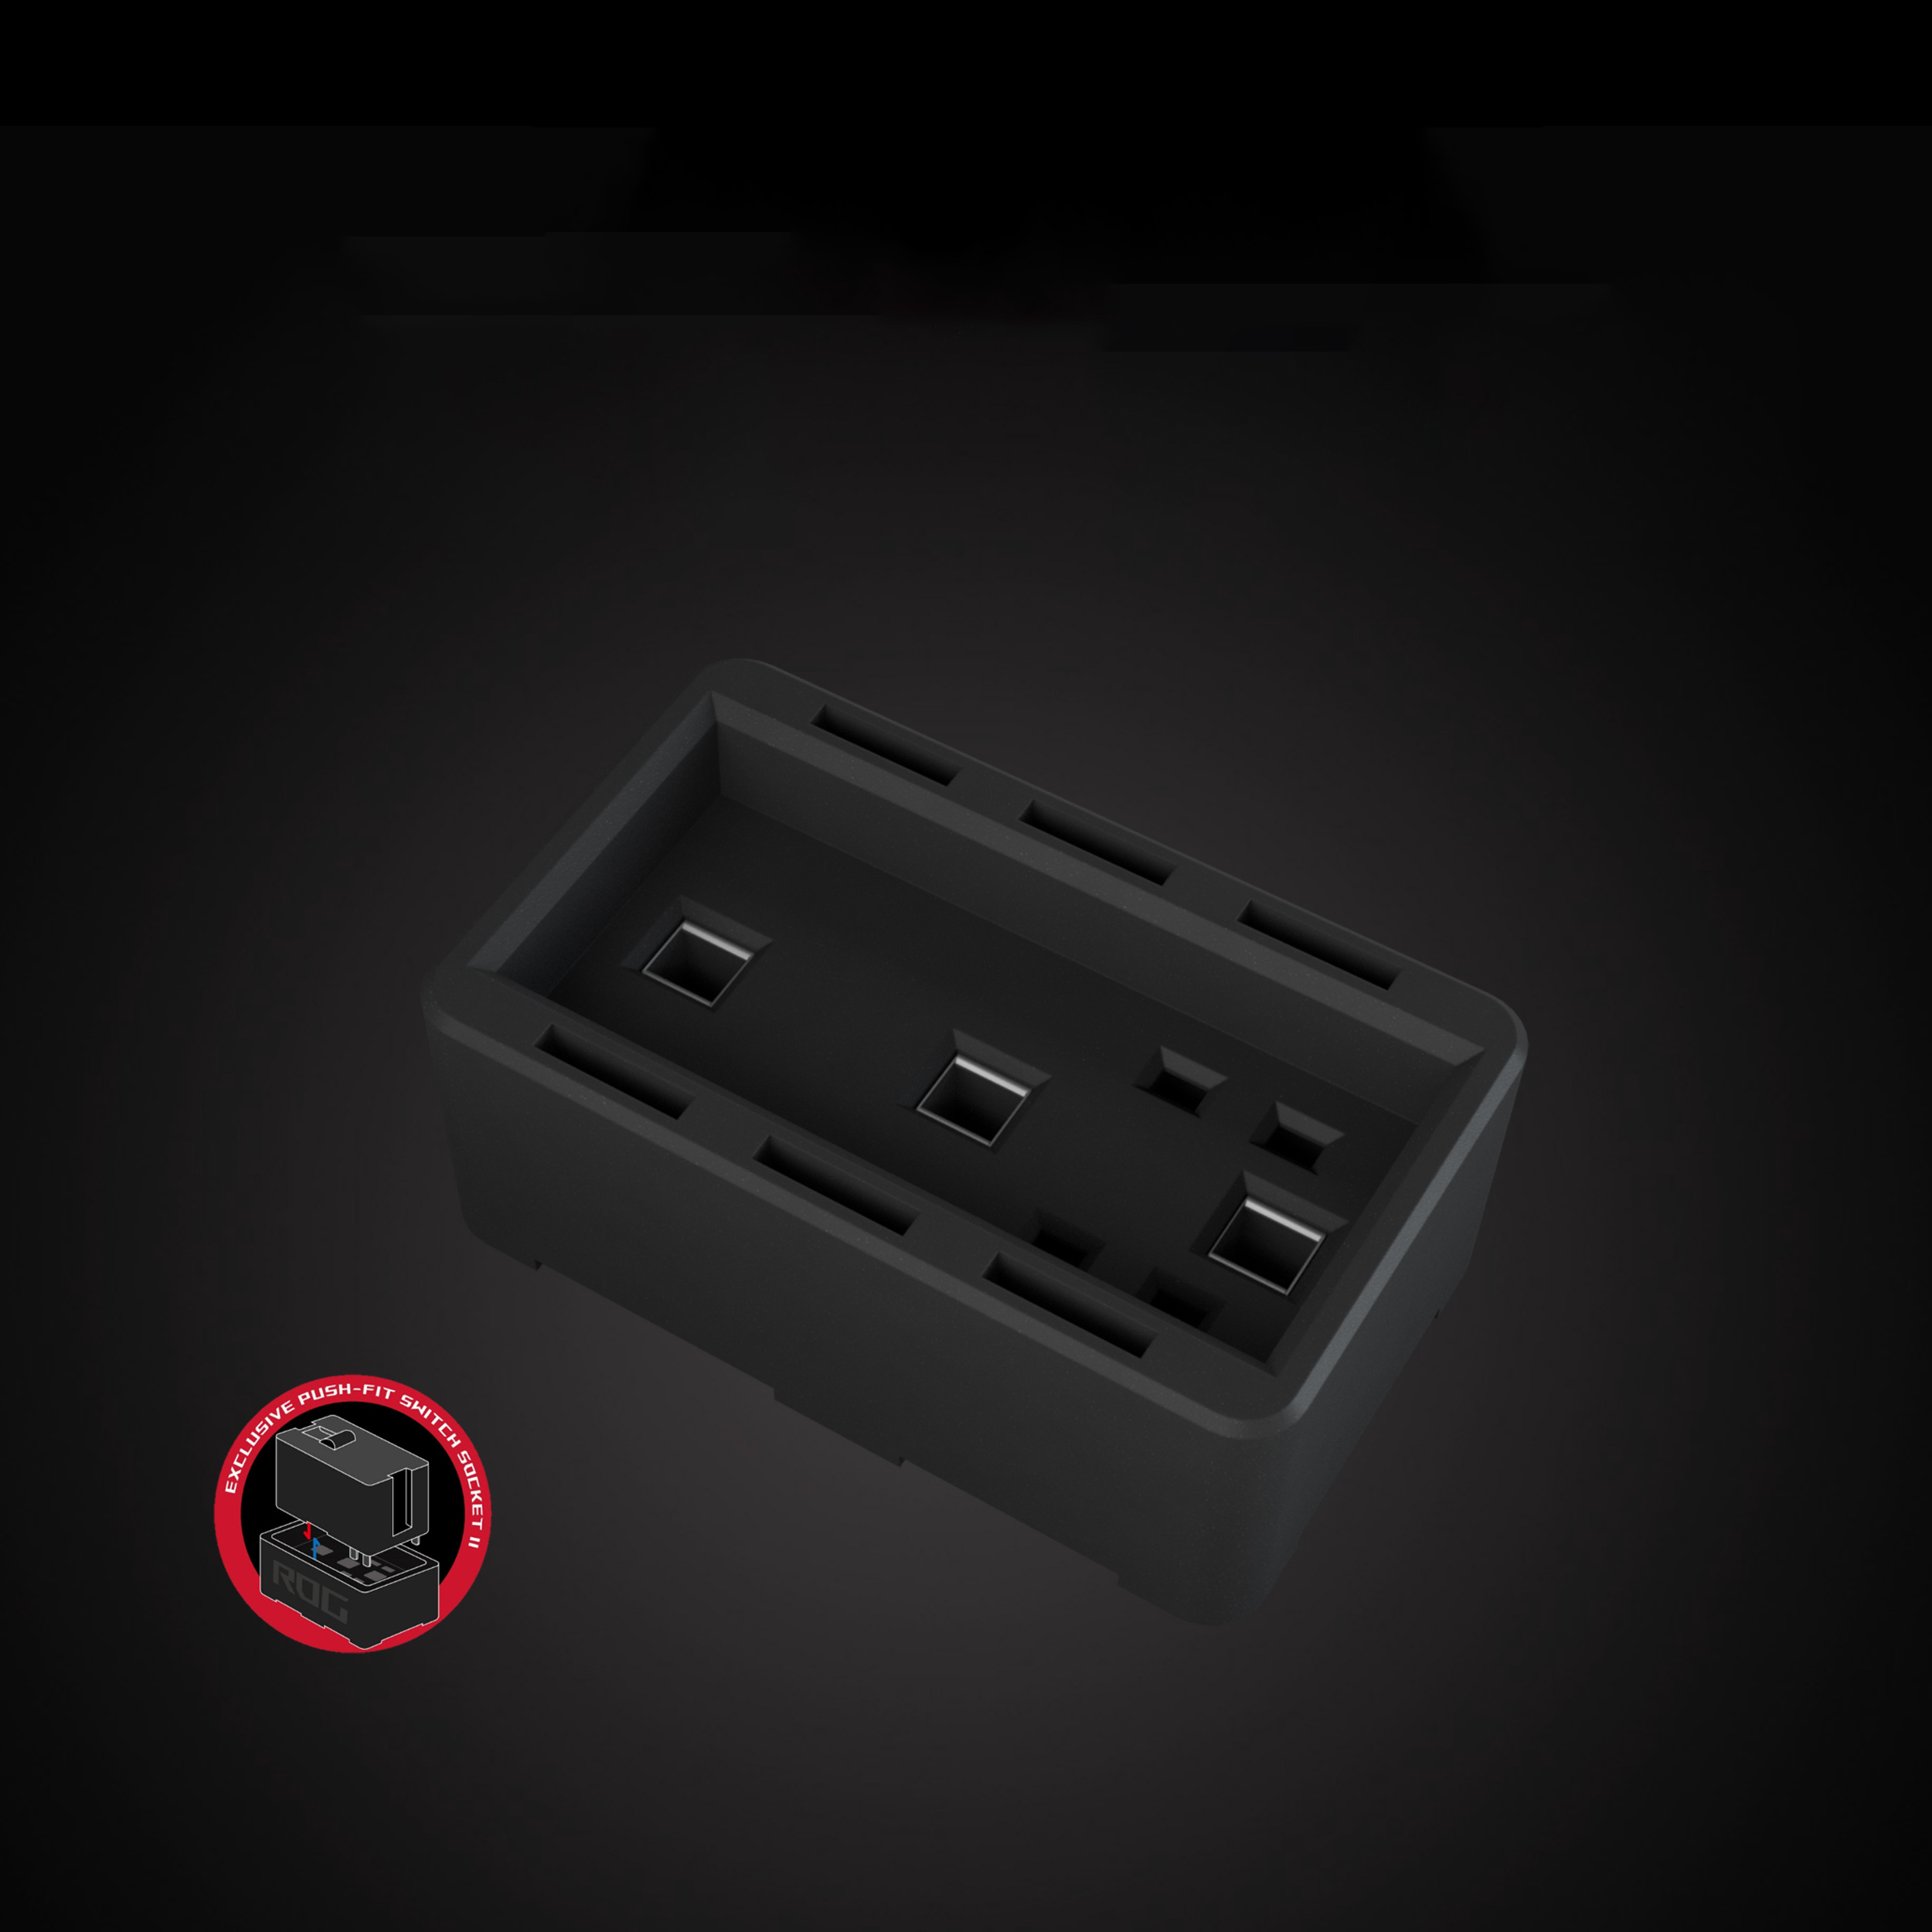 Chuột Asus ROG Gladius III (USB/RGB/màu đen) nâng cấp socket thay switch mới